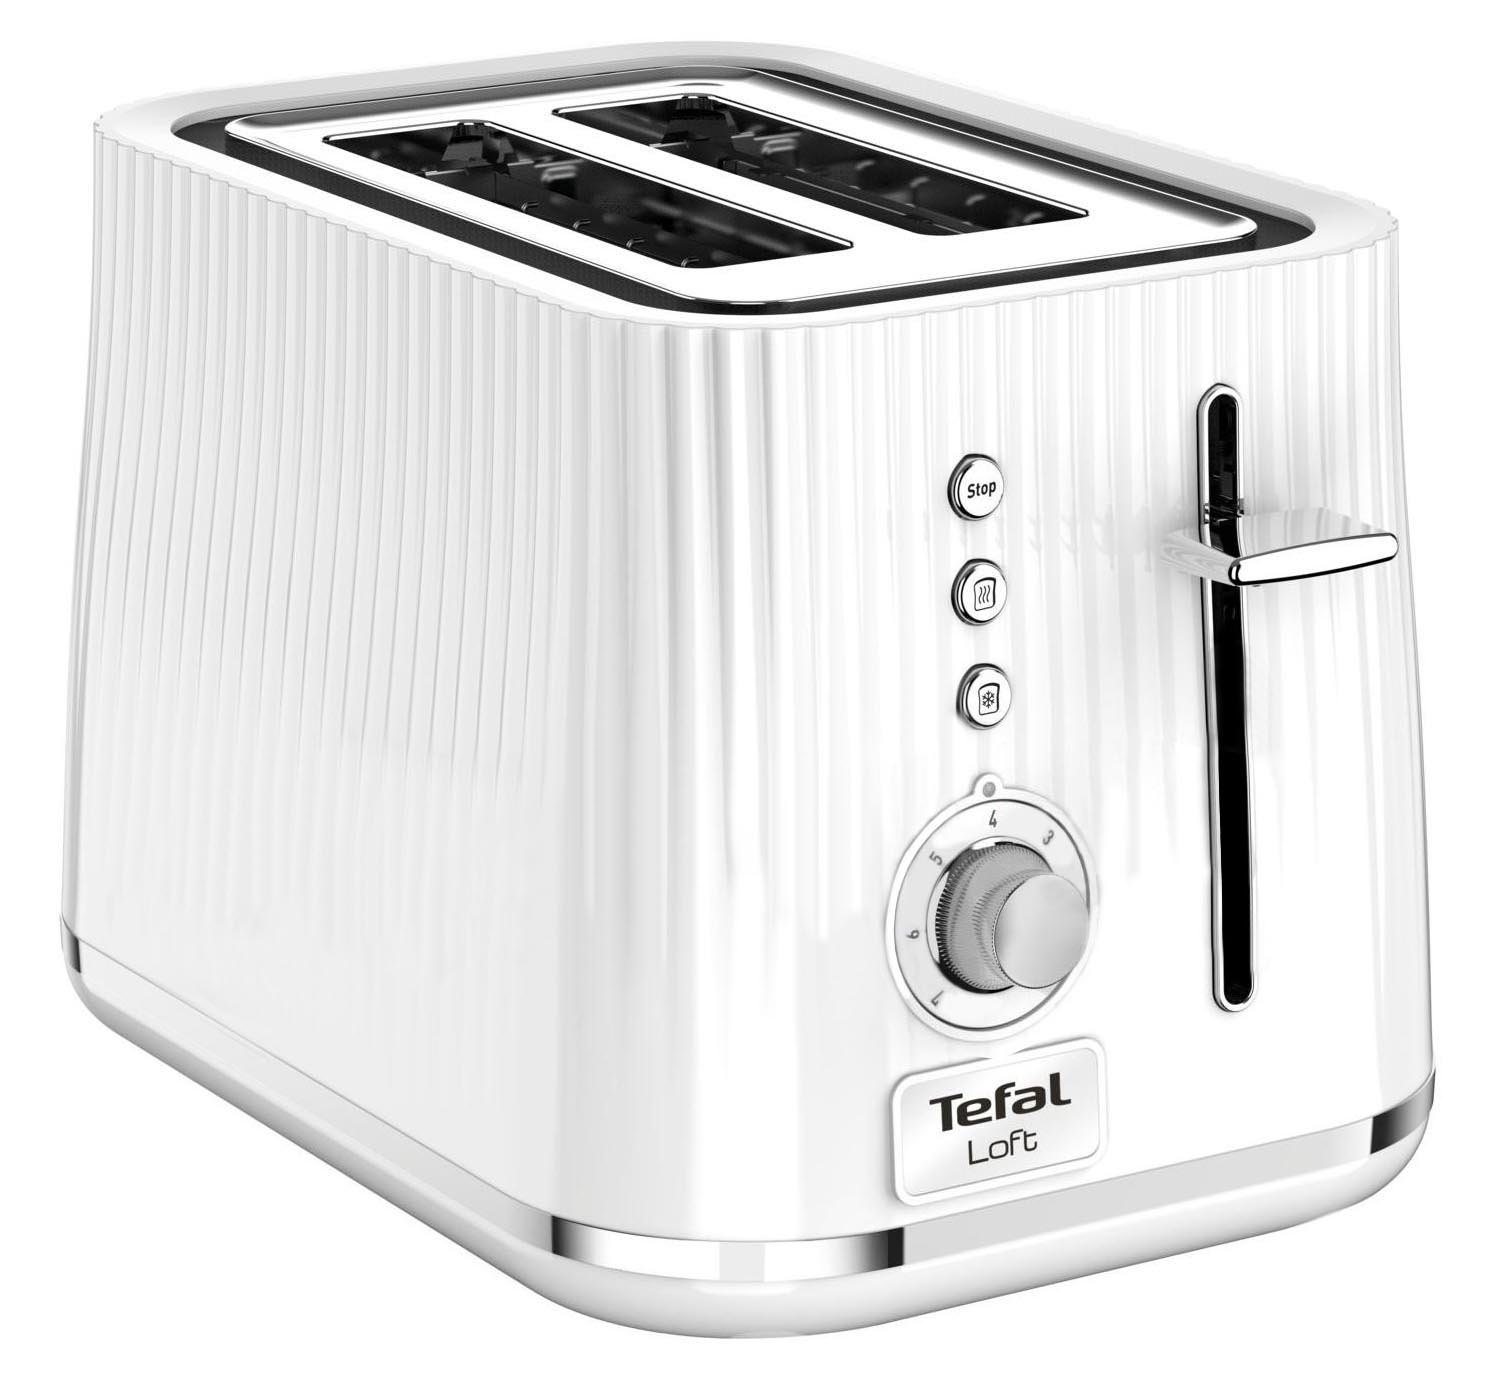 TEFAL Loft TT7611 Biały Toster - niskie ceny i opinie w Media Expert